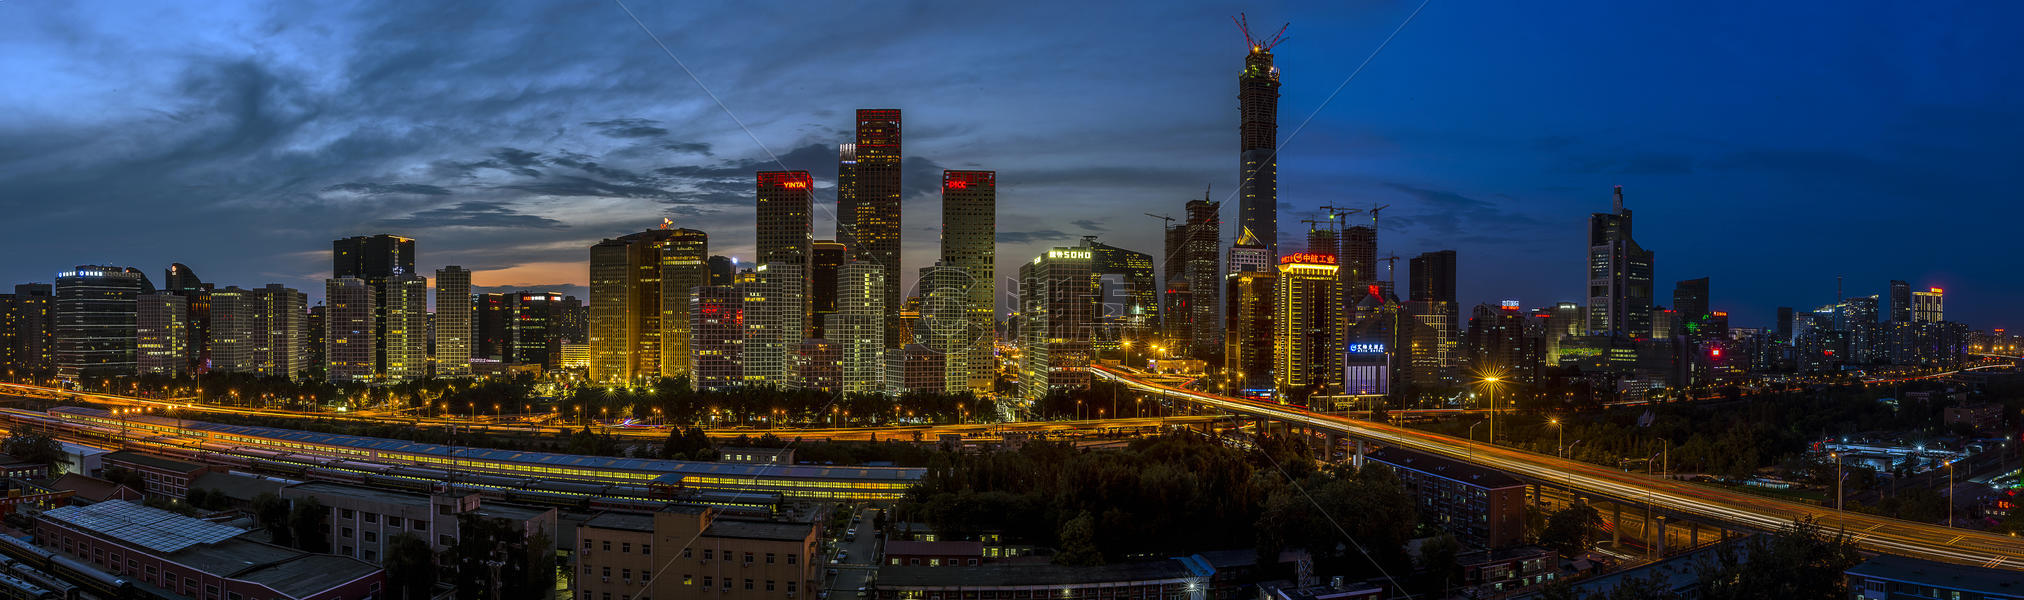 北京cbd夜景图片素材免费下载